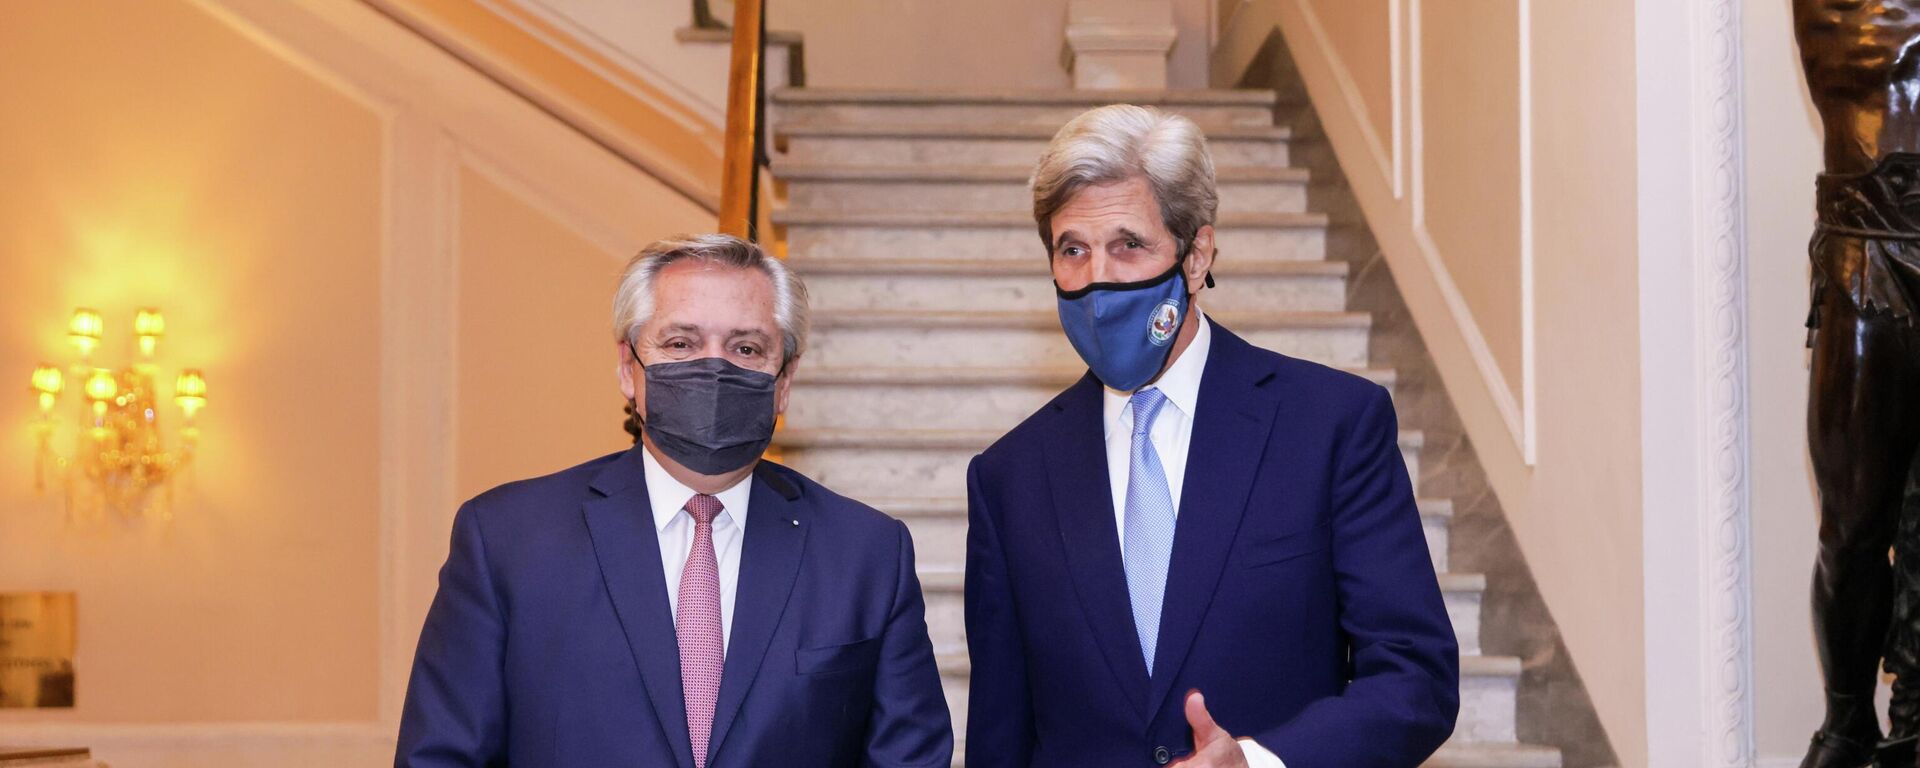 El Presidente argentino, Alberto Fernández,  se reunió en Roma con John Kerry, enviado especial para el Clima de los Estados Unidos - Sputnik Mundo, 1920, 14.05.2021